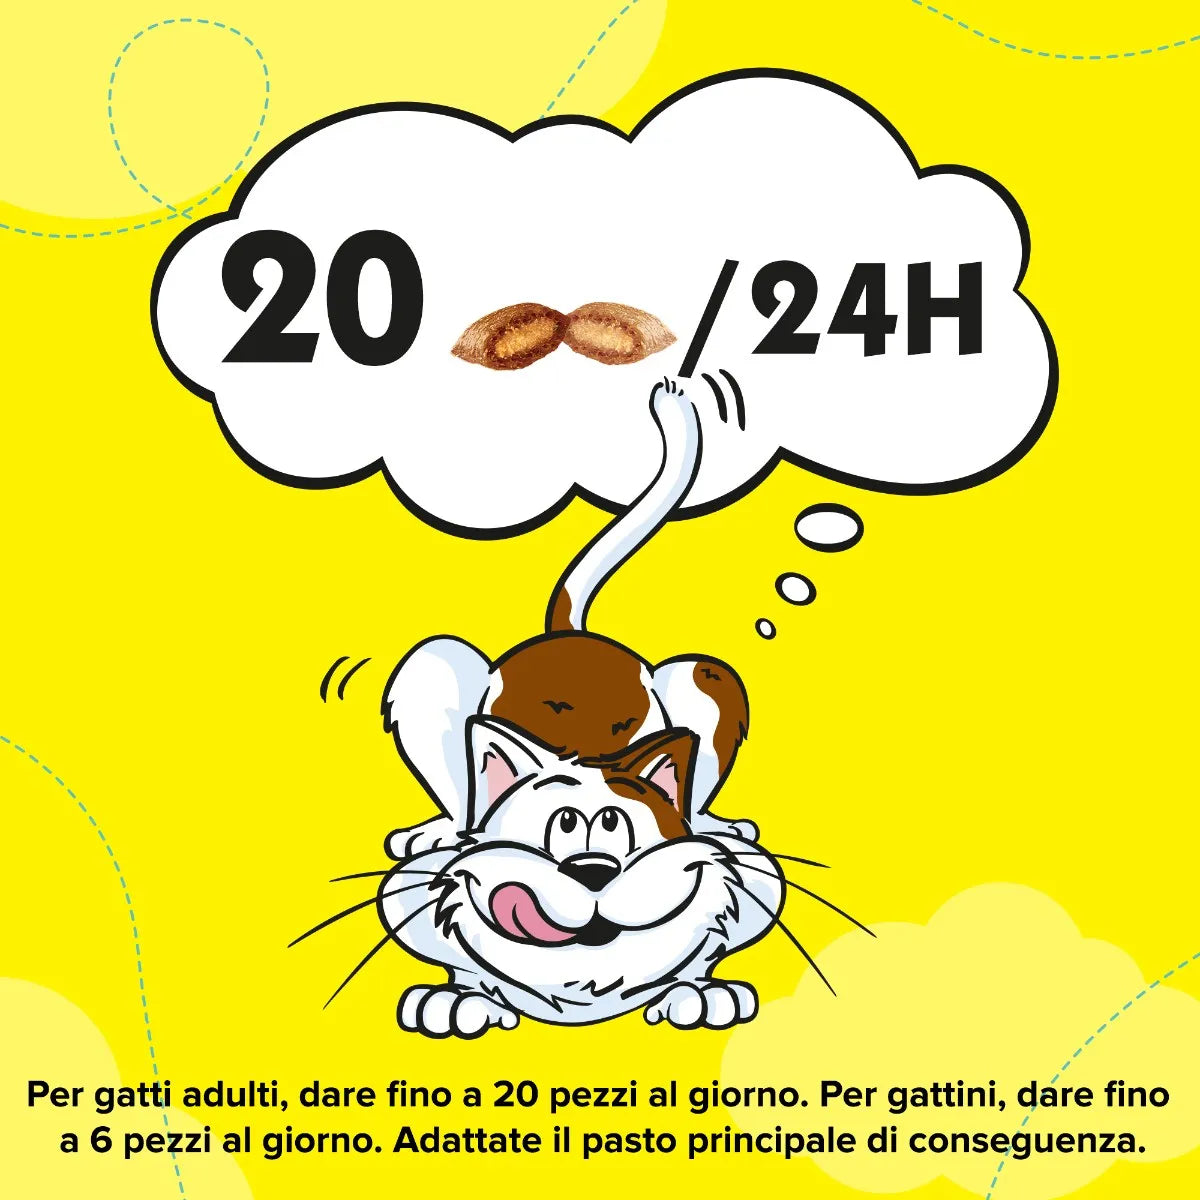 3x Catisfactions con Manzo 60g Snack per Gatti